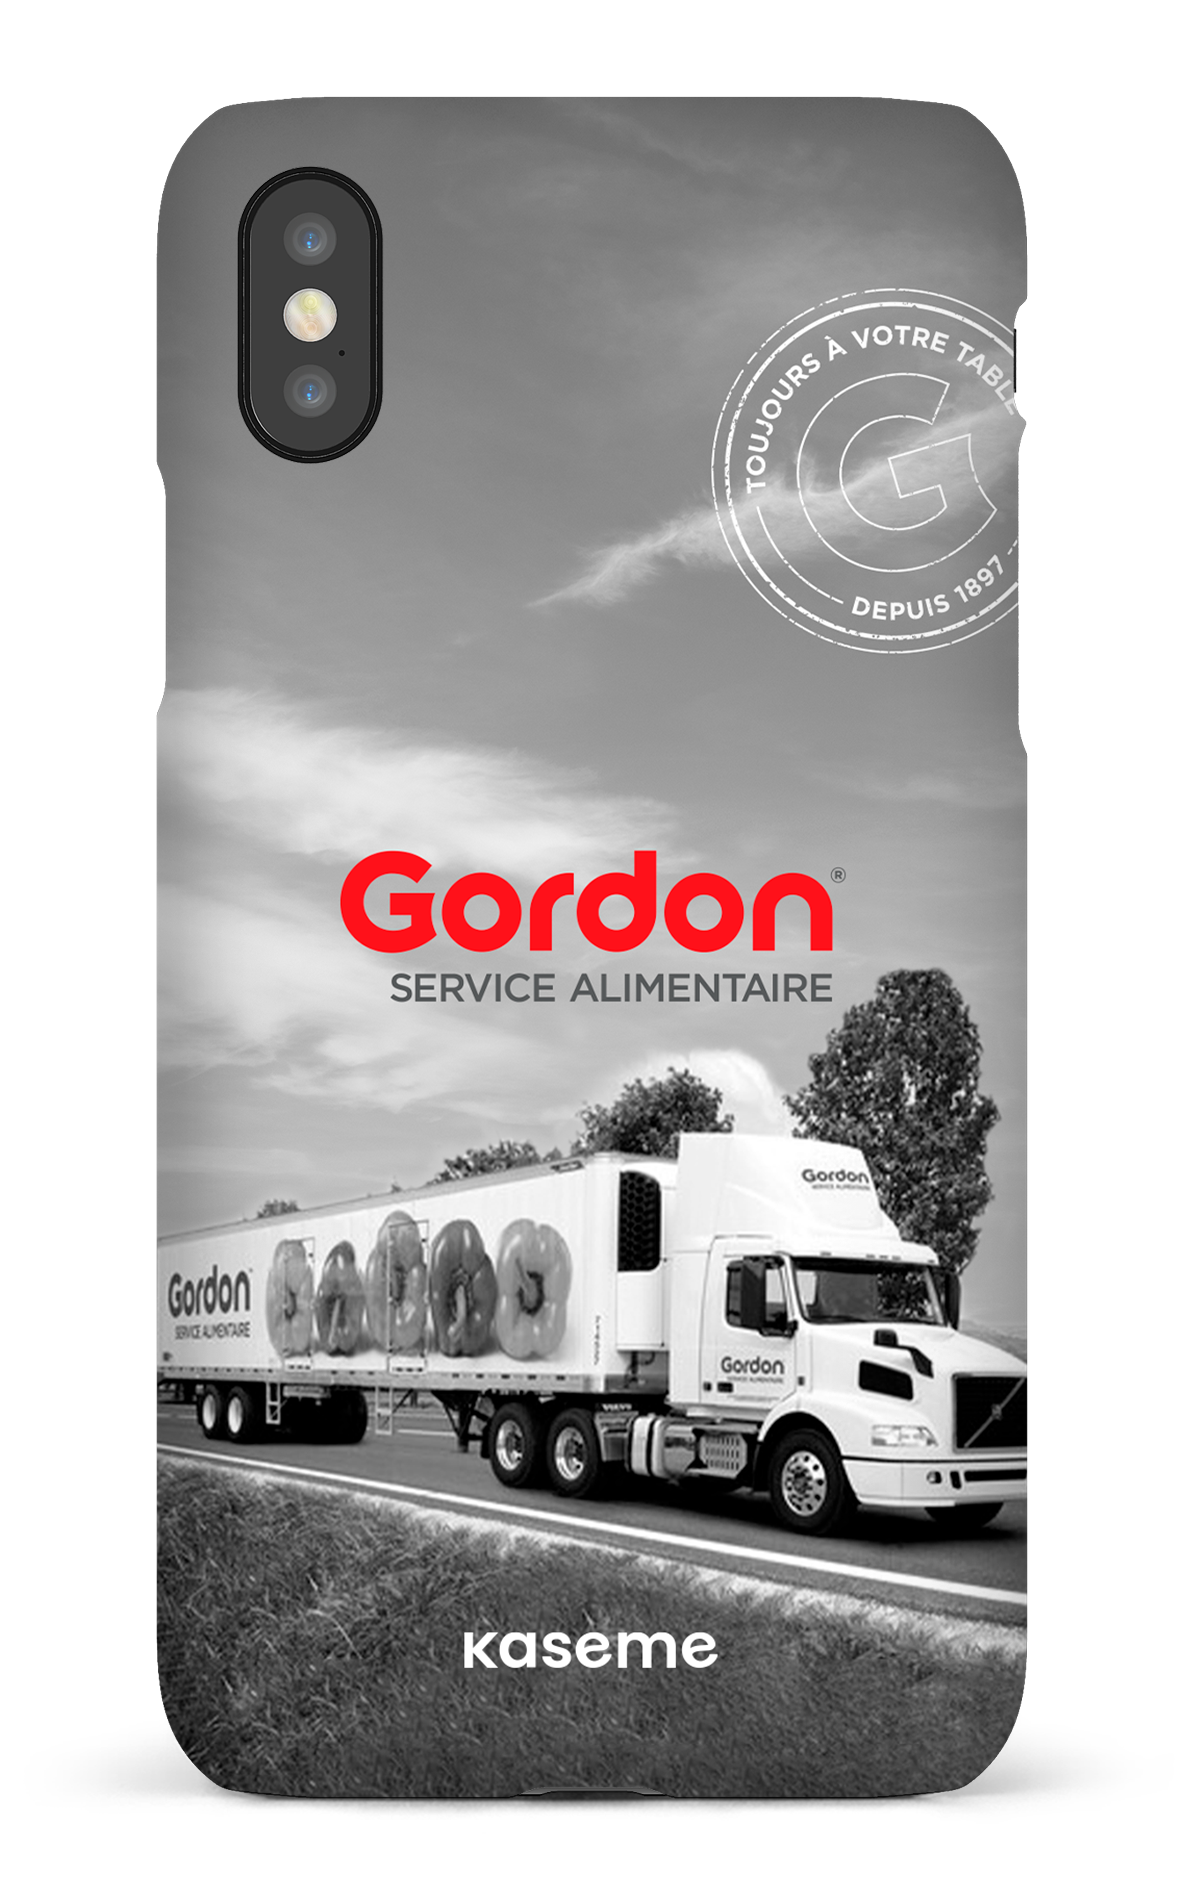 Gordon Francais - iPhone X/Xs